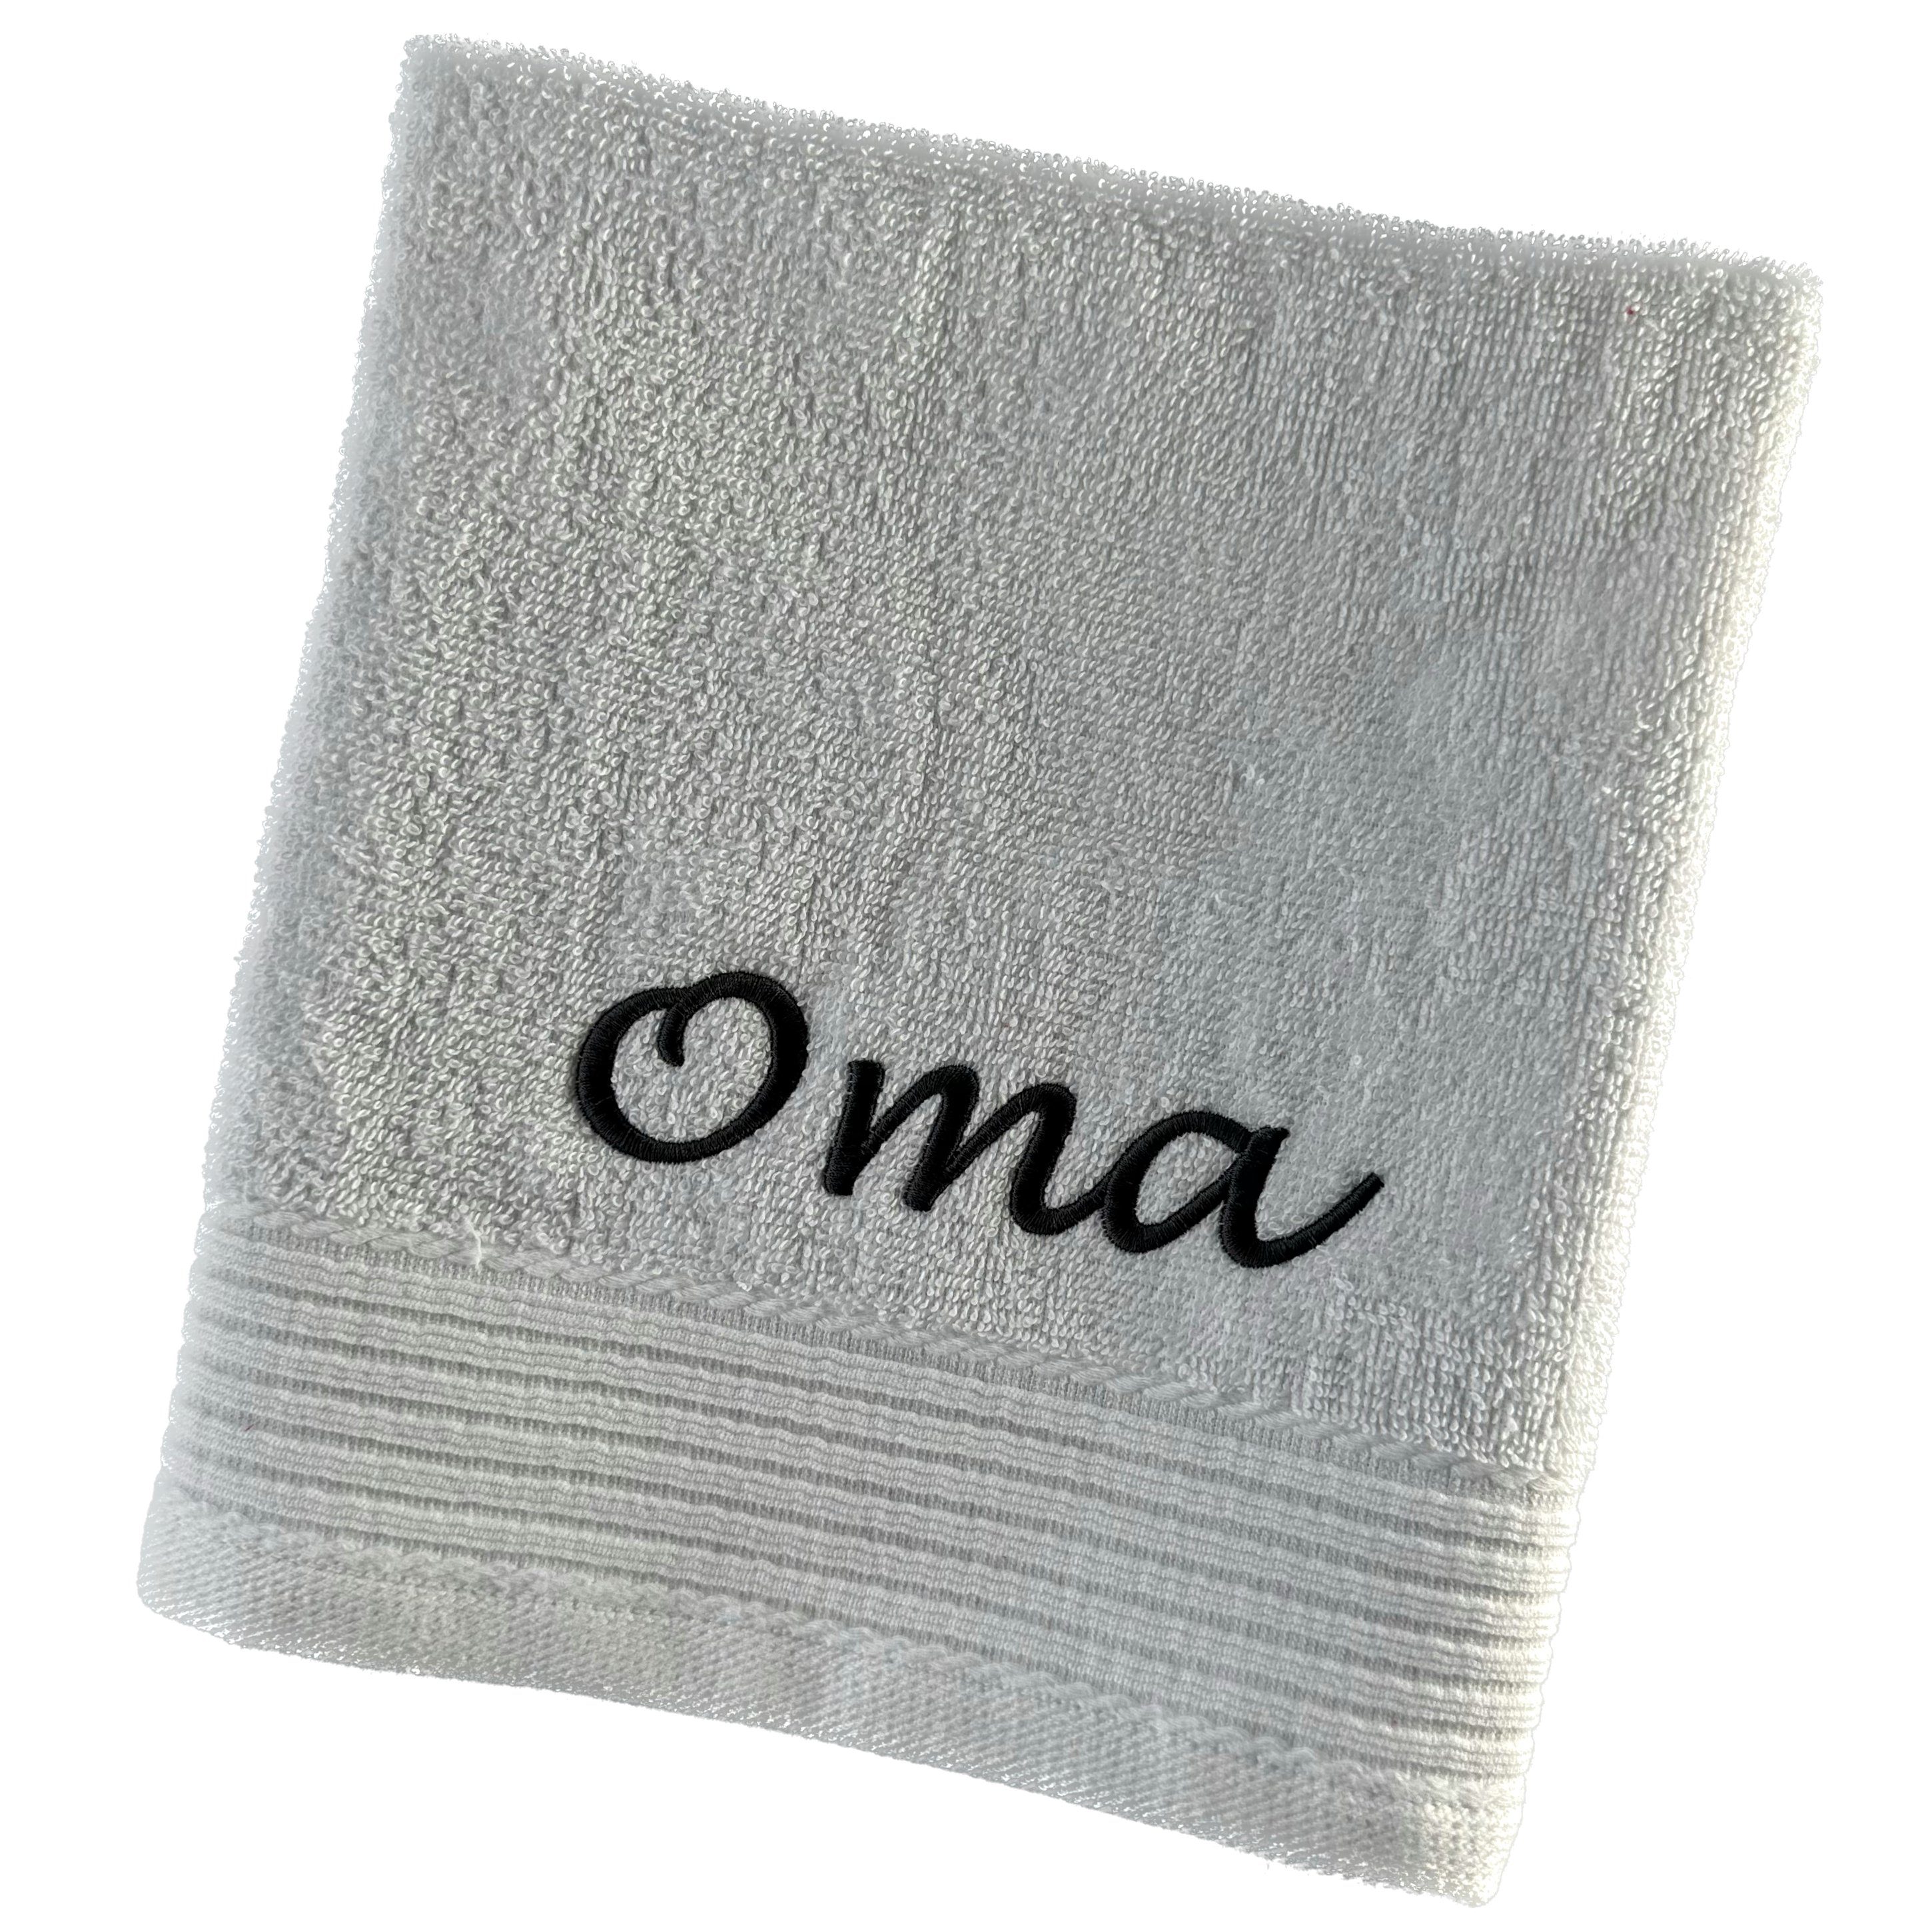 Schnoschi Handtuch Handtuch mit Oma oder Opa bestickt Gästehandtuch Duschtuch Badetuch, hochwertige Bestickung mit Oma oder Opa ozeanblau